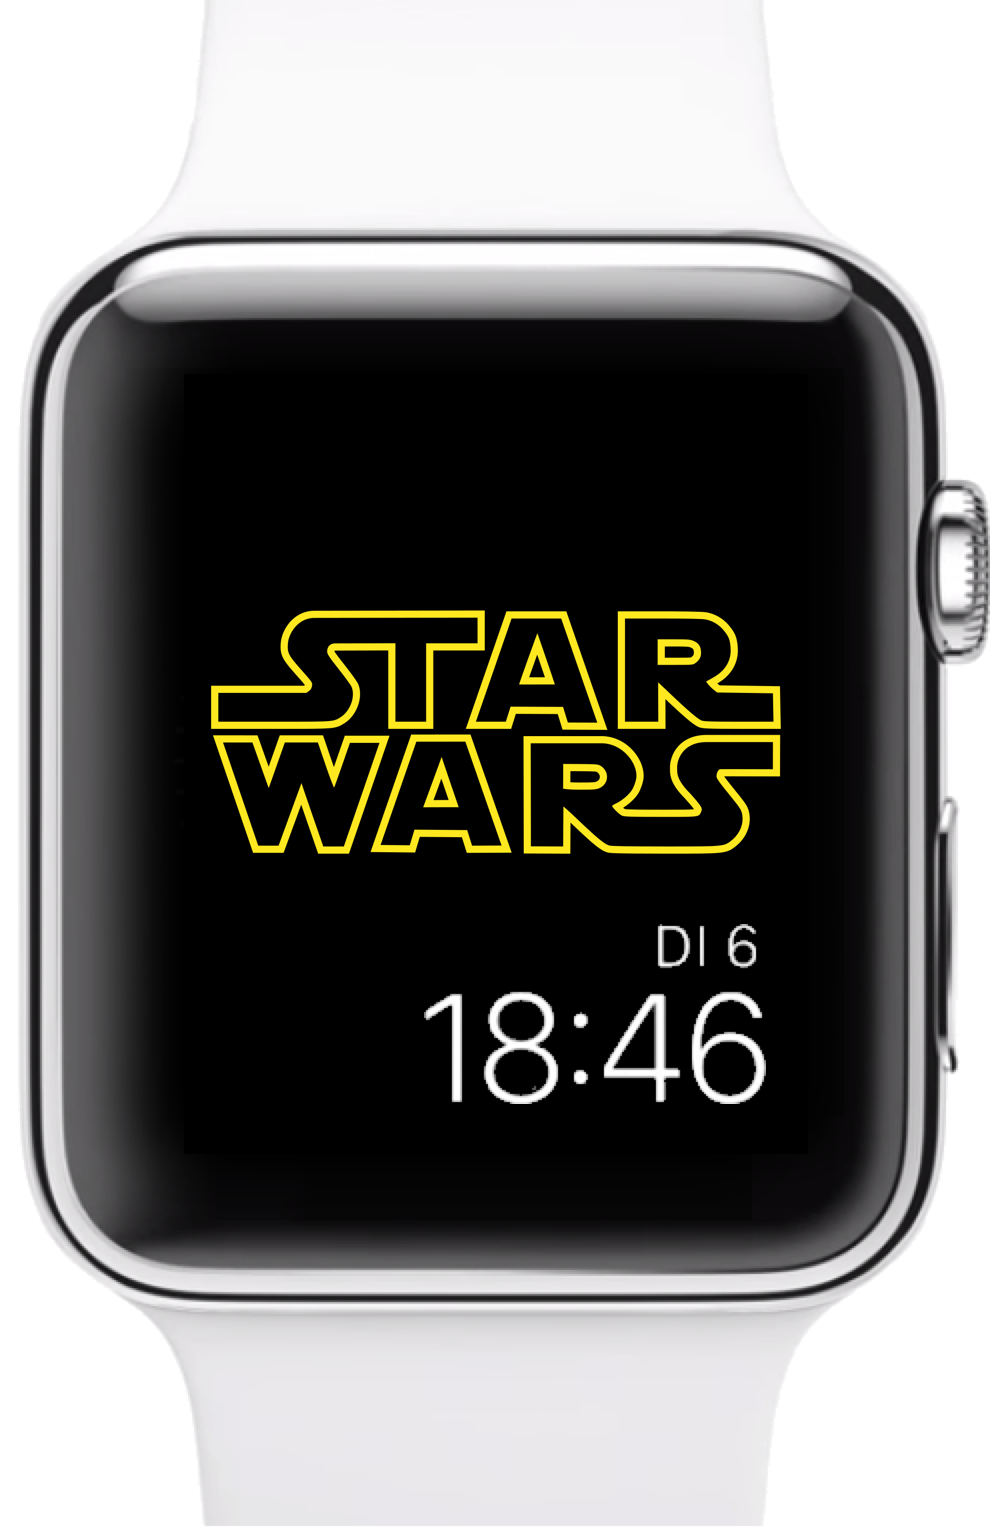 39 HQ Pictures Star Wars Apple Watch : Star Wars Death Star Watch